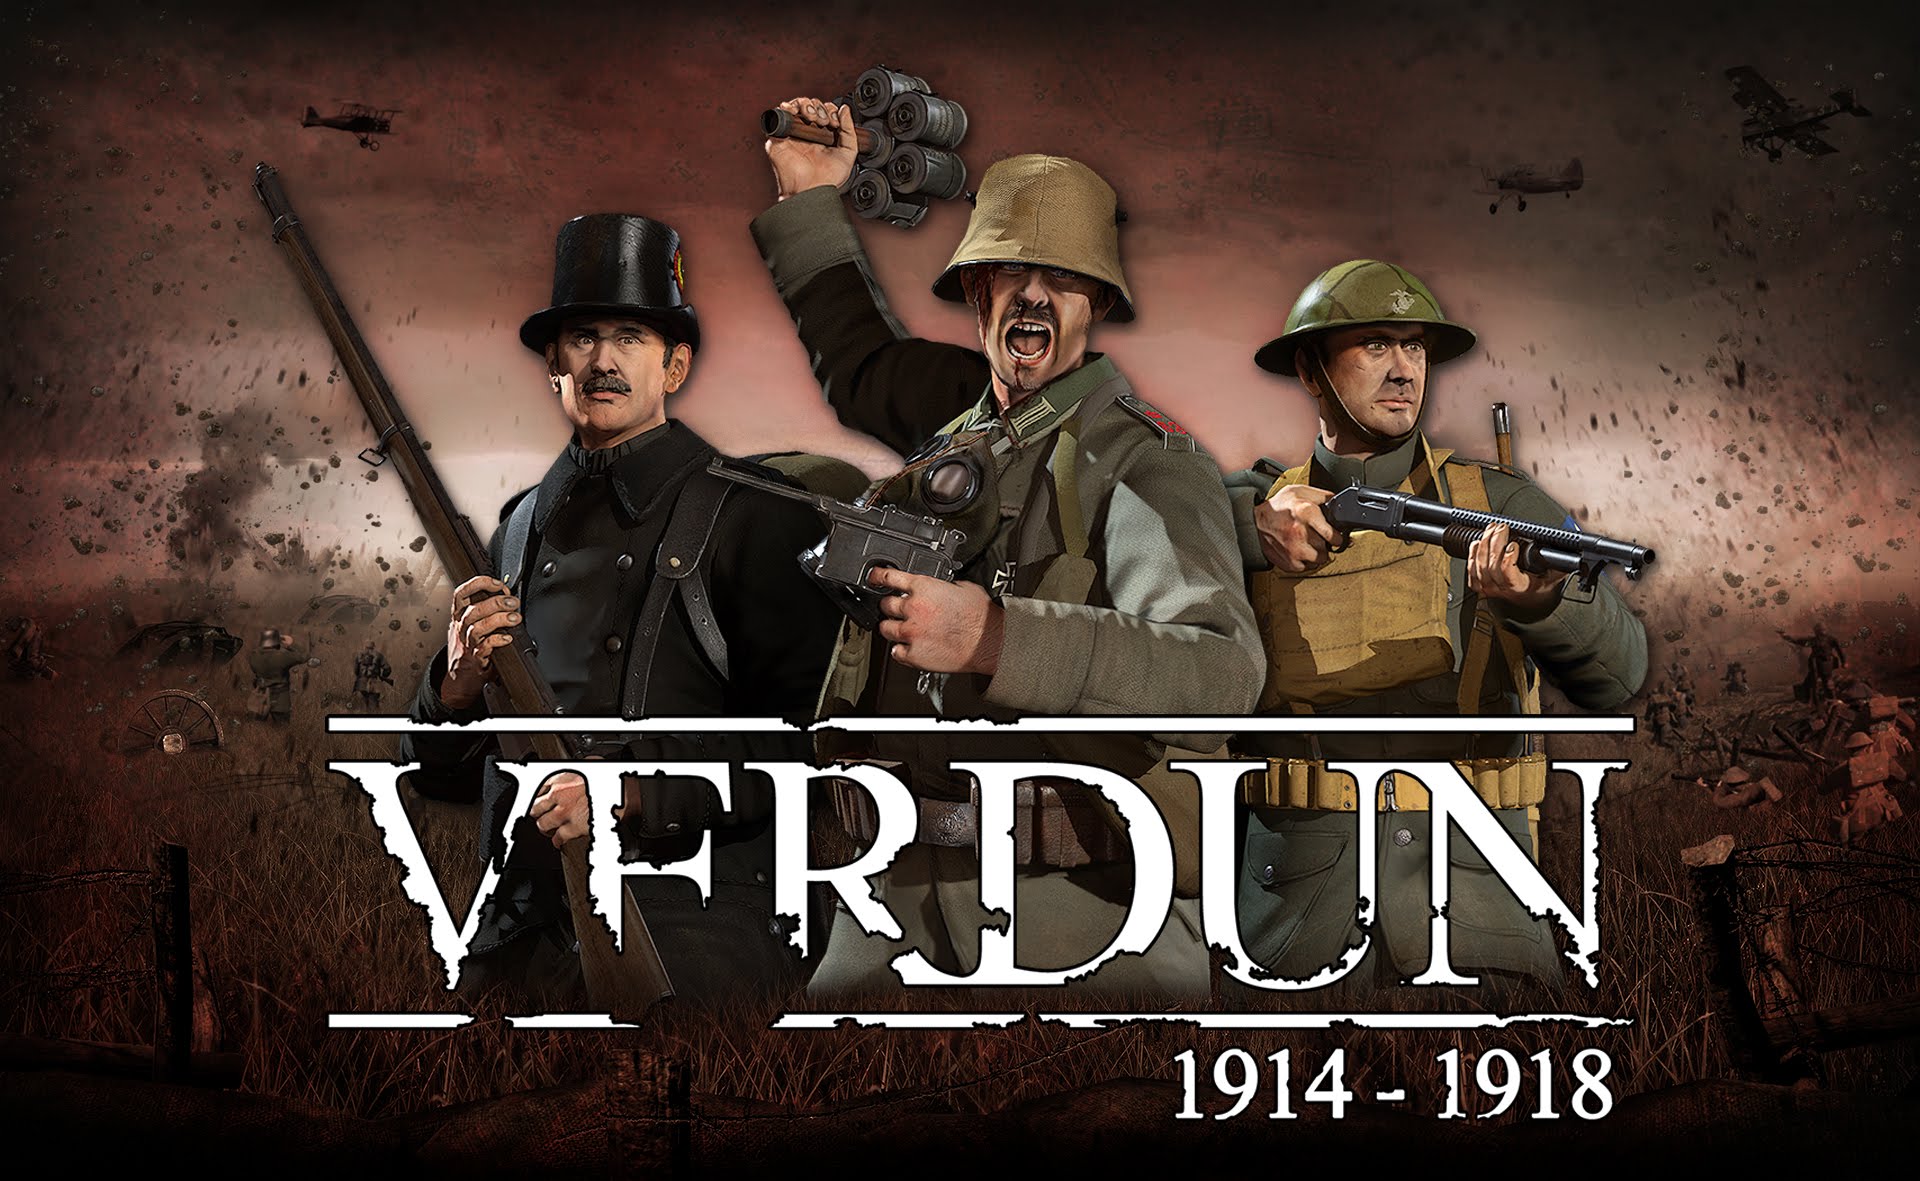 Verdun Free "Horrors of War" Expansion Trailer